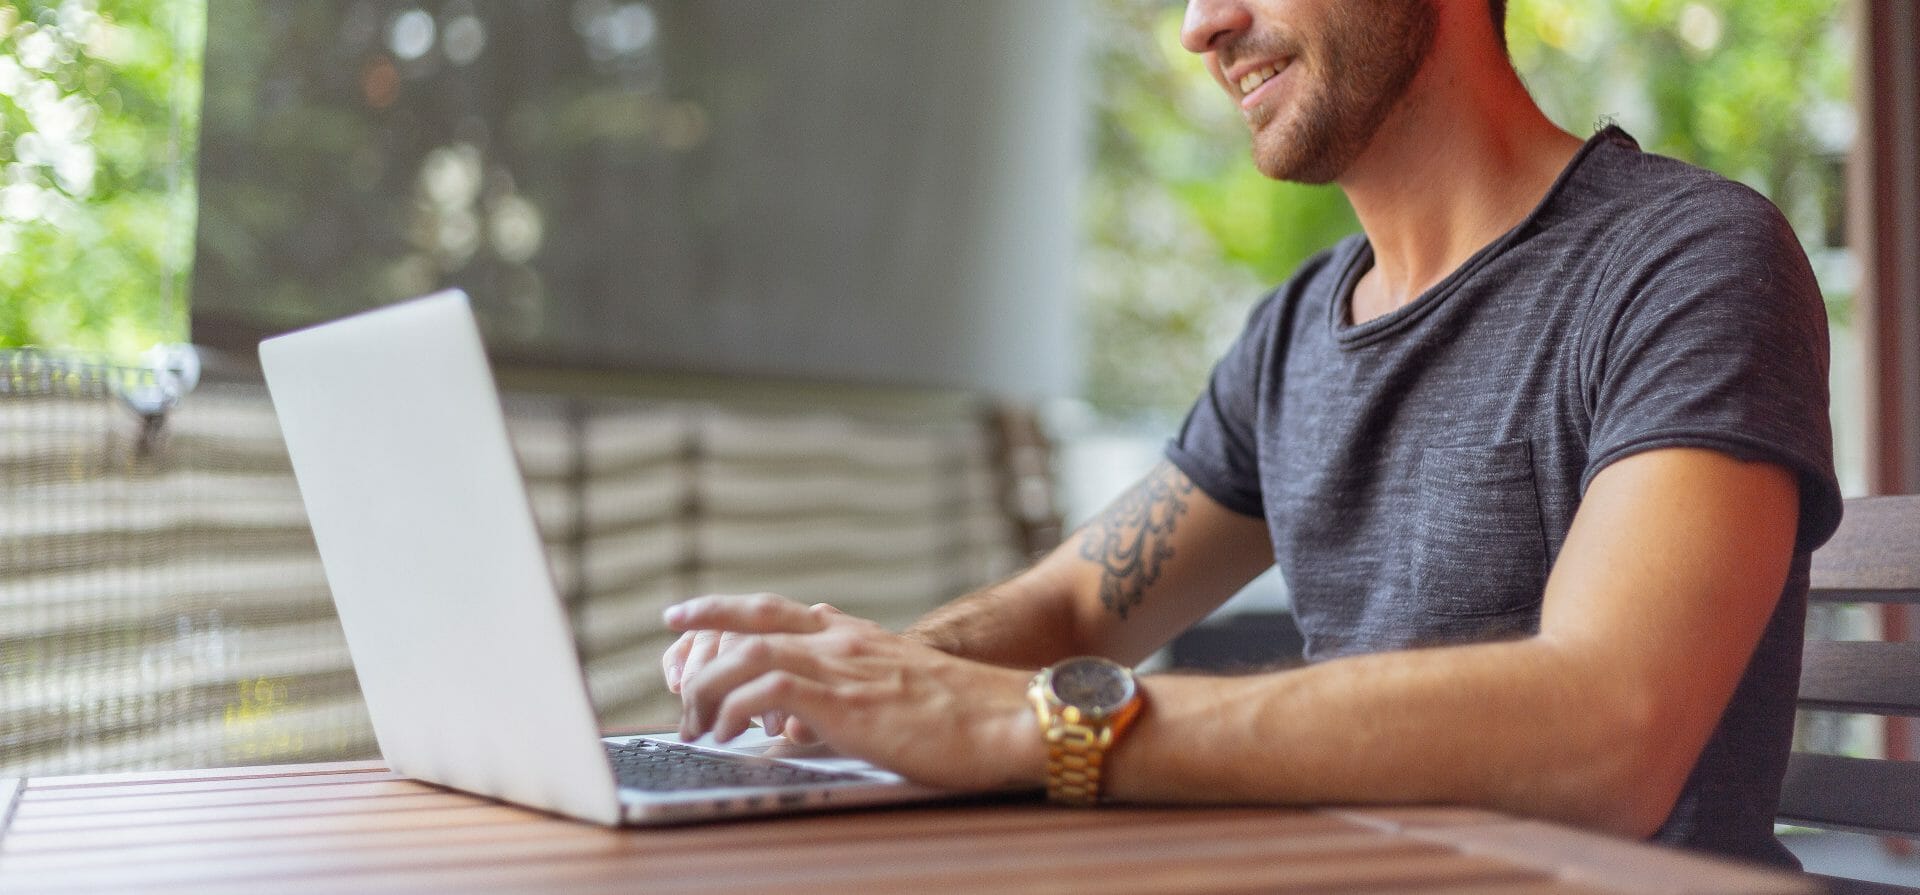 Seitenaufnahme eines Mannes, der an einem Schreibtisch sitzt und im Rahmen des Mitarbeiter-generierten Lernens auf einem Laptop tippt.